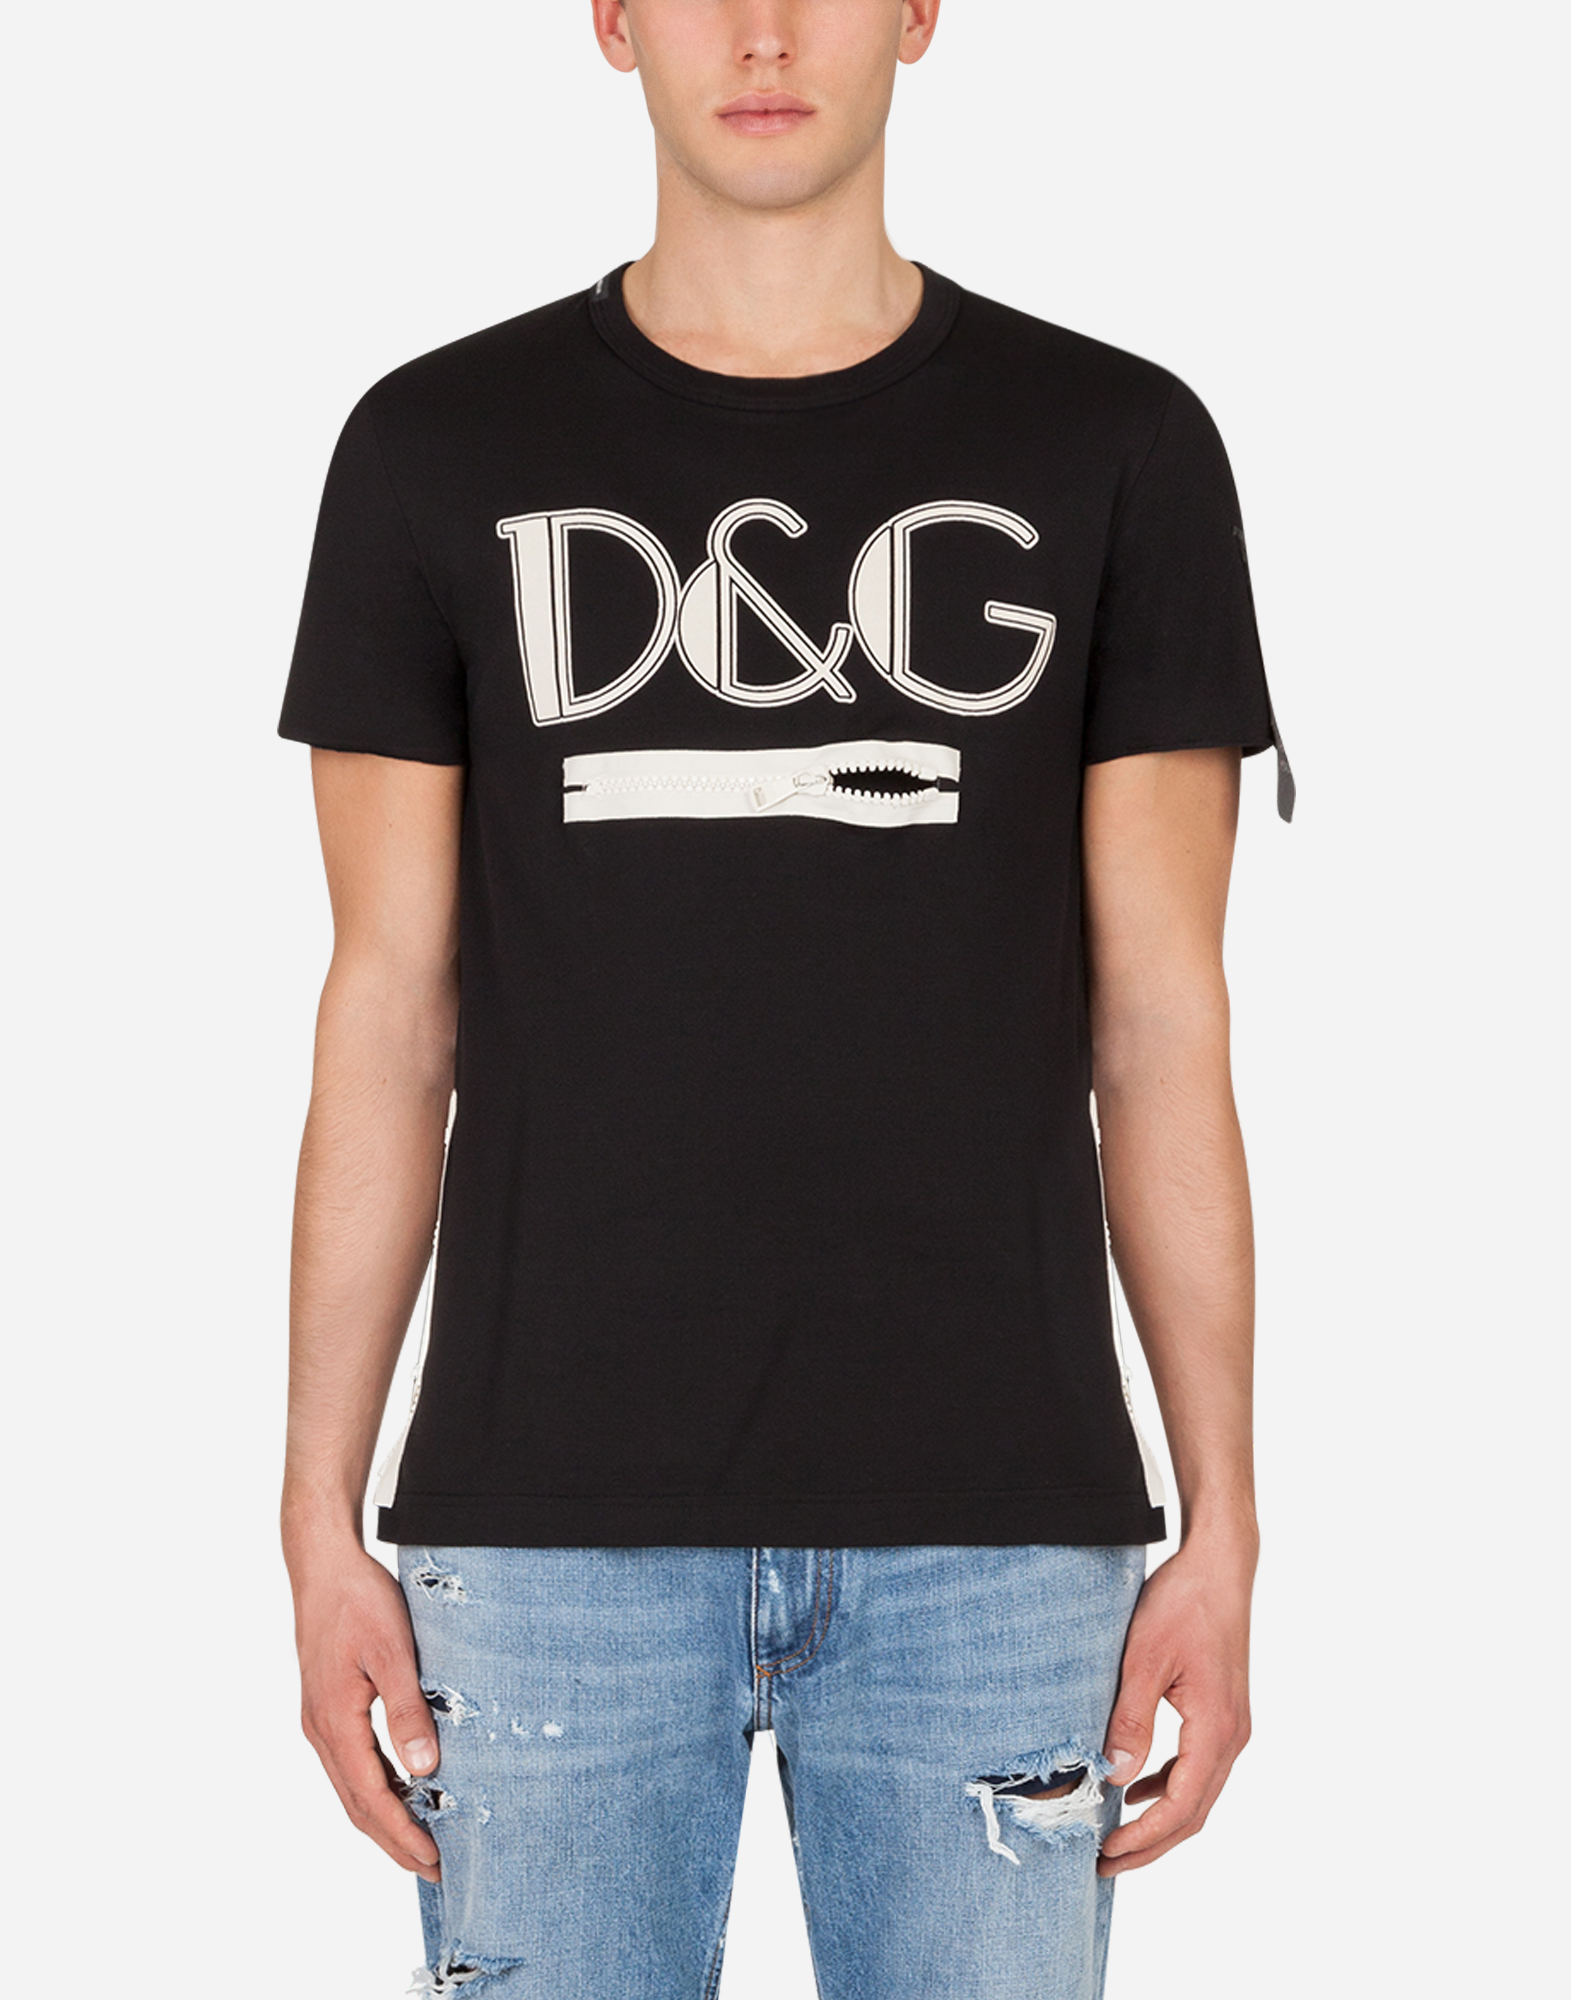 d&g shirt sale